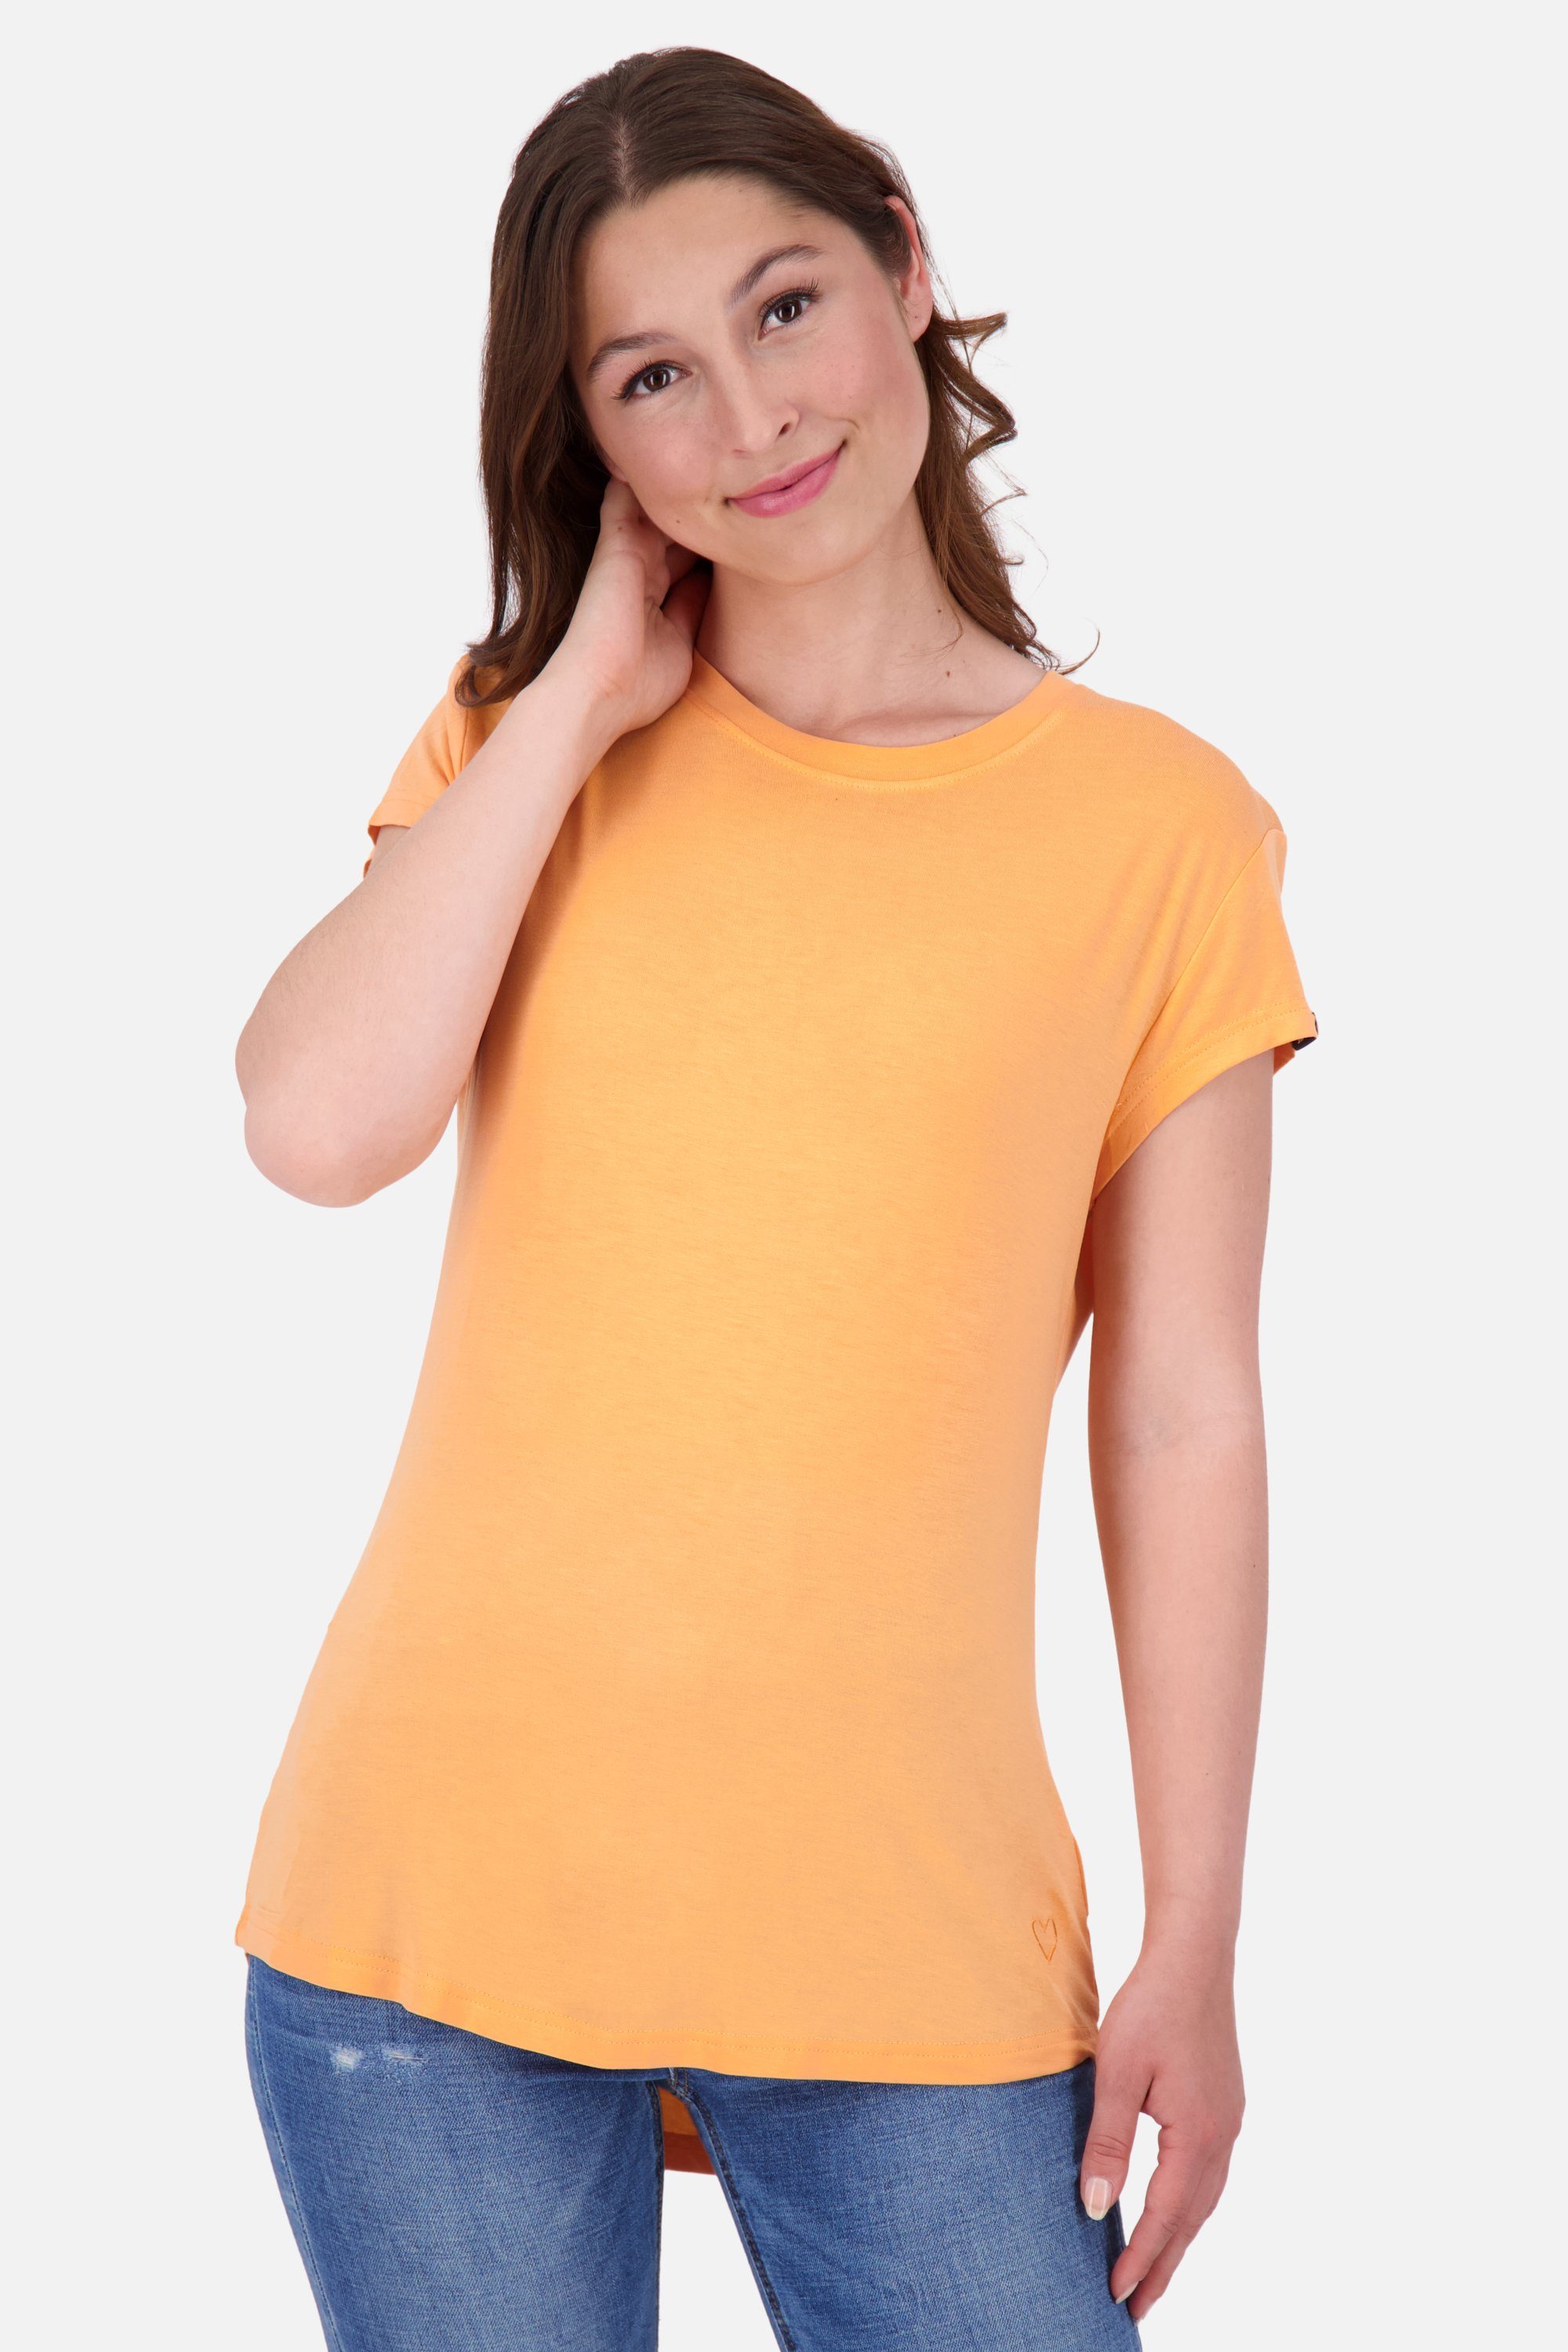 Alife & Rundhalsshirt MimmyAK Shirt Damen tangerine A Shirt Kurzarmshirt, Kickin